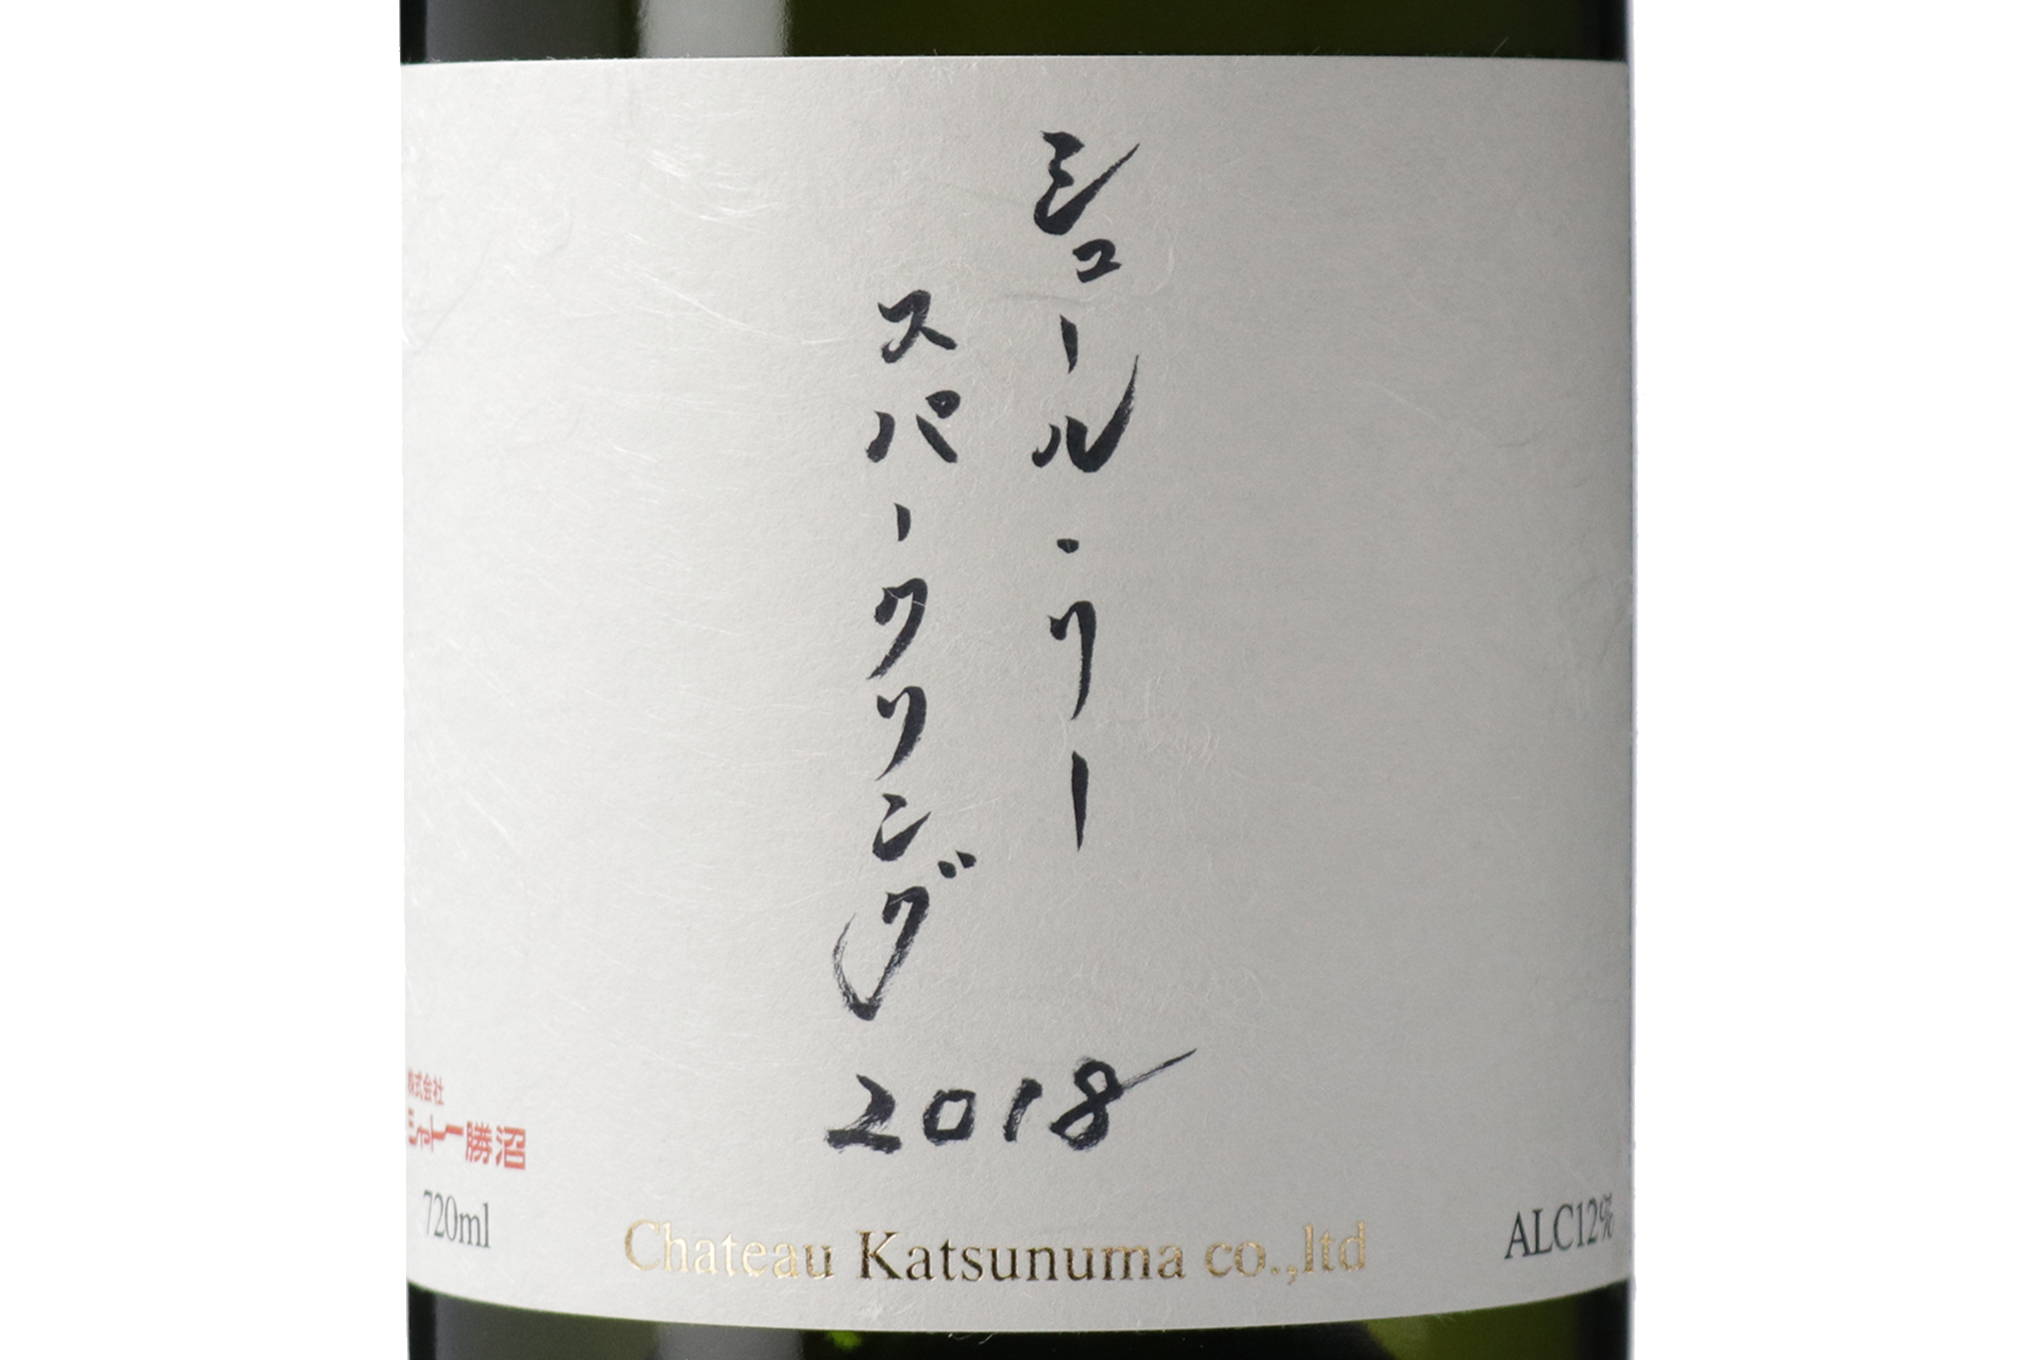 限定品『シュール・リー スパークリング』の味わいに、日本ワインの奥深さを見る